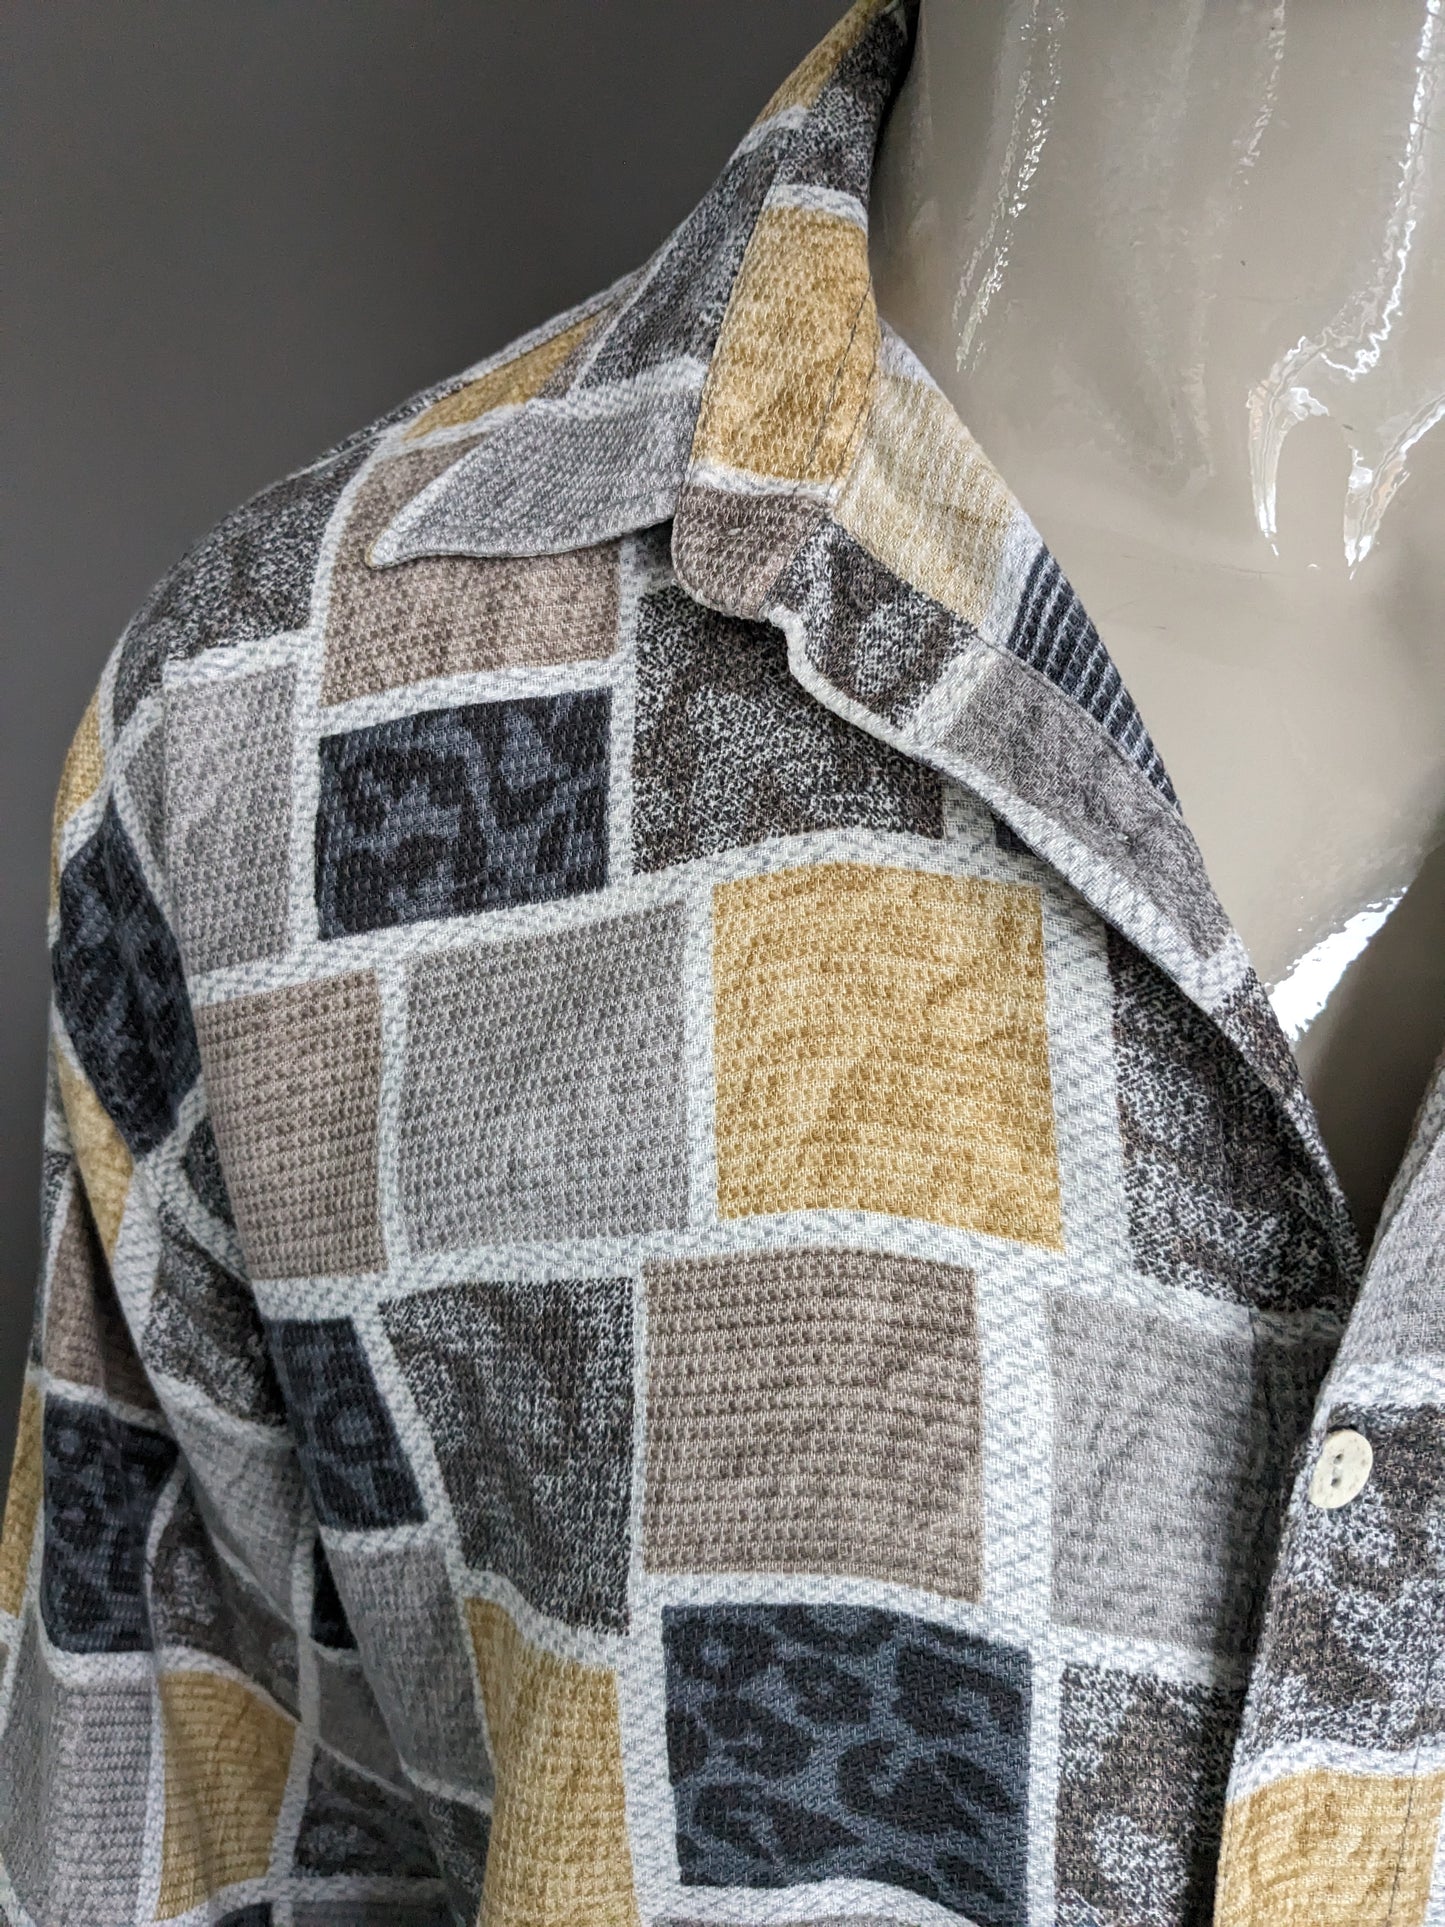 Shirt stagioni vintage a manica corta. Stampa grigio giallo marrone. Dimensione 2xl / xxl.